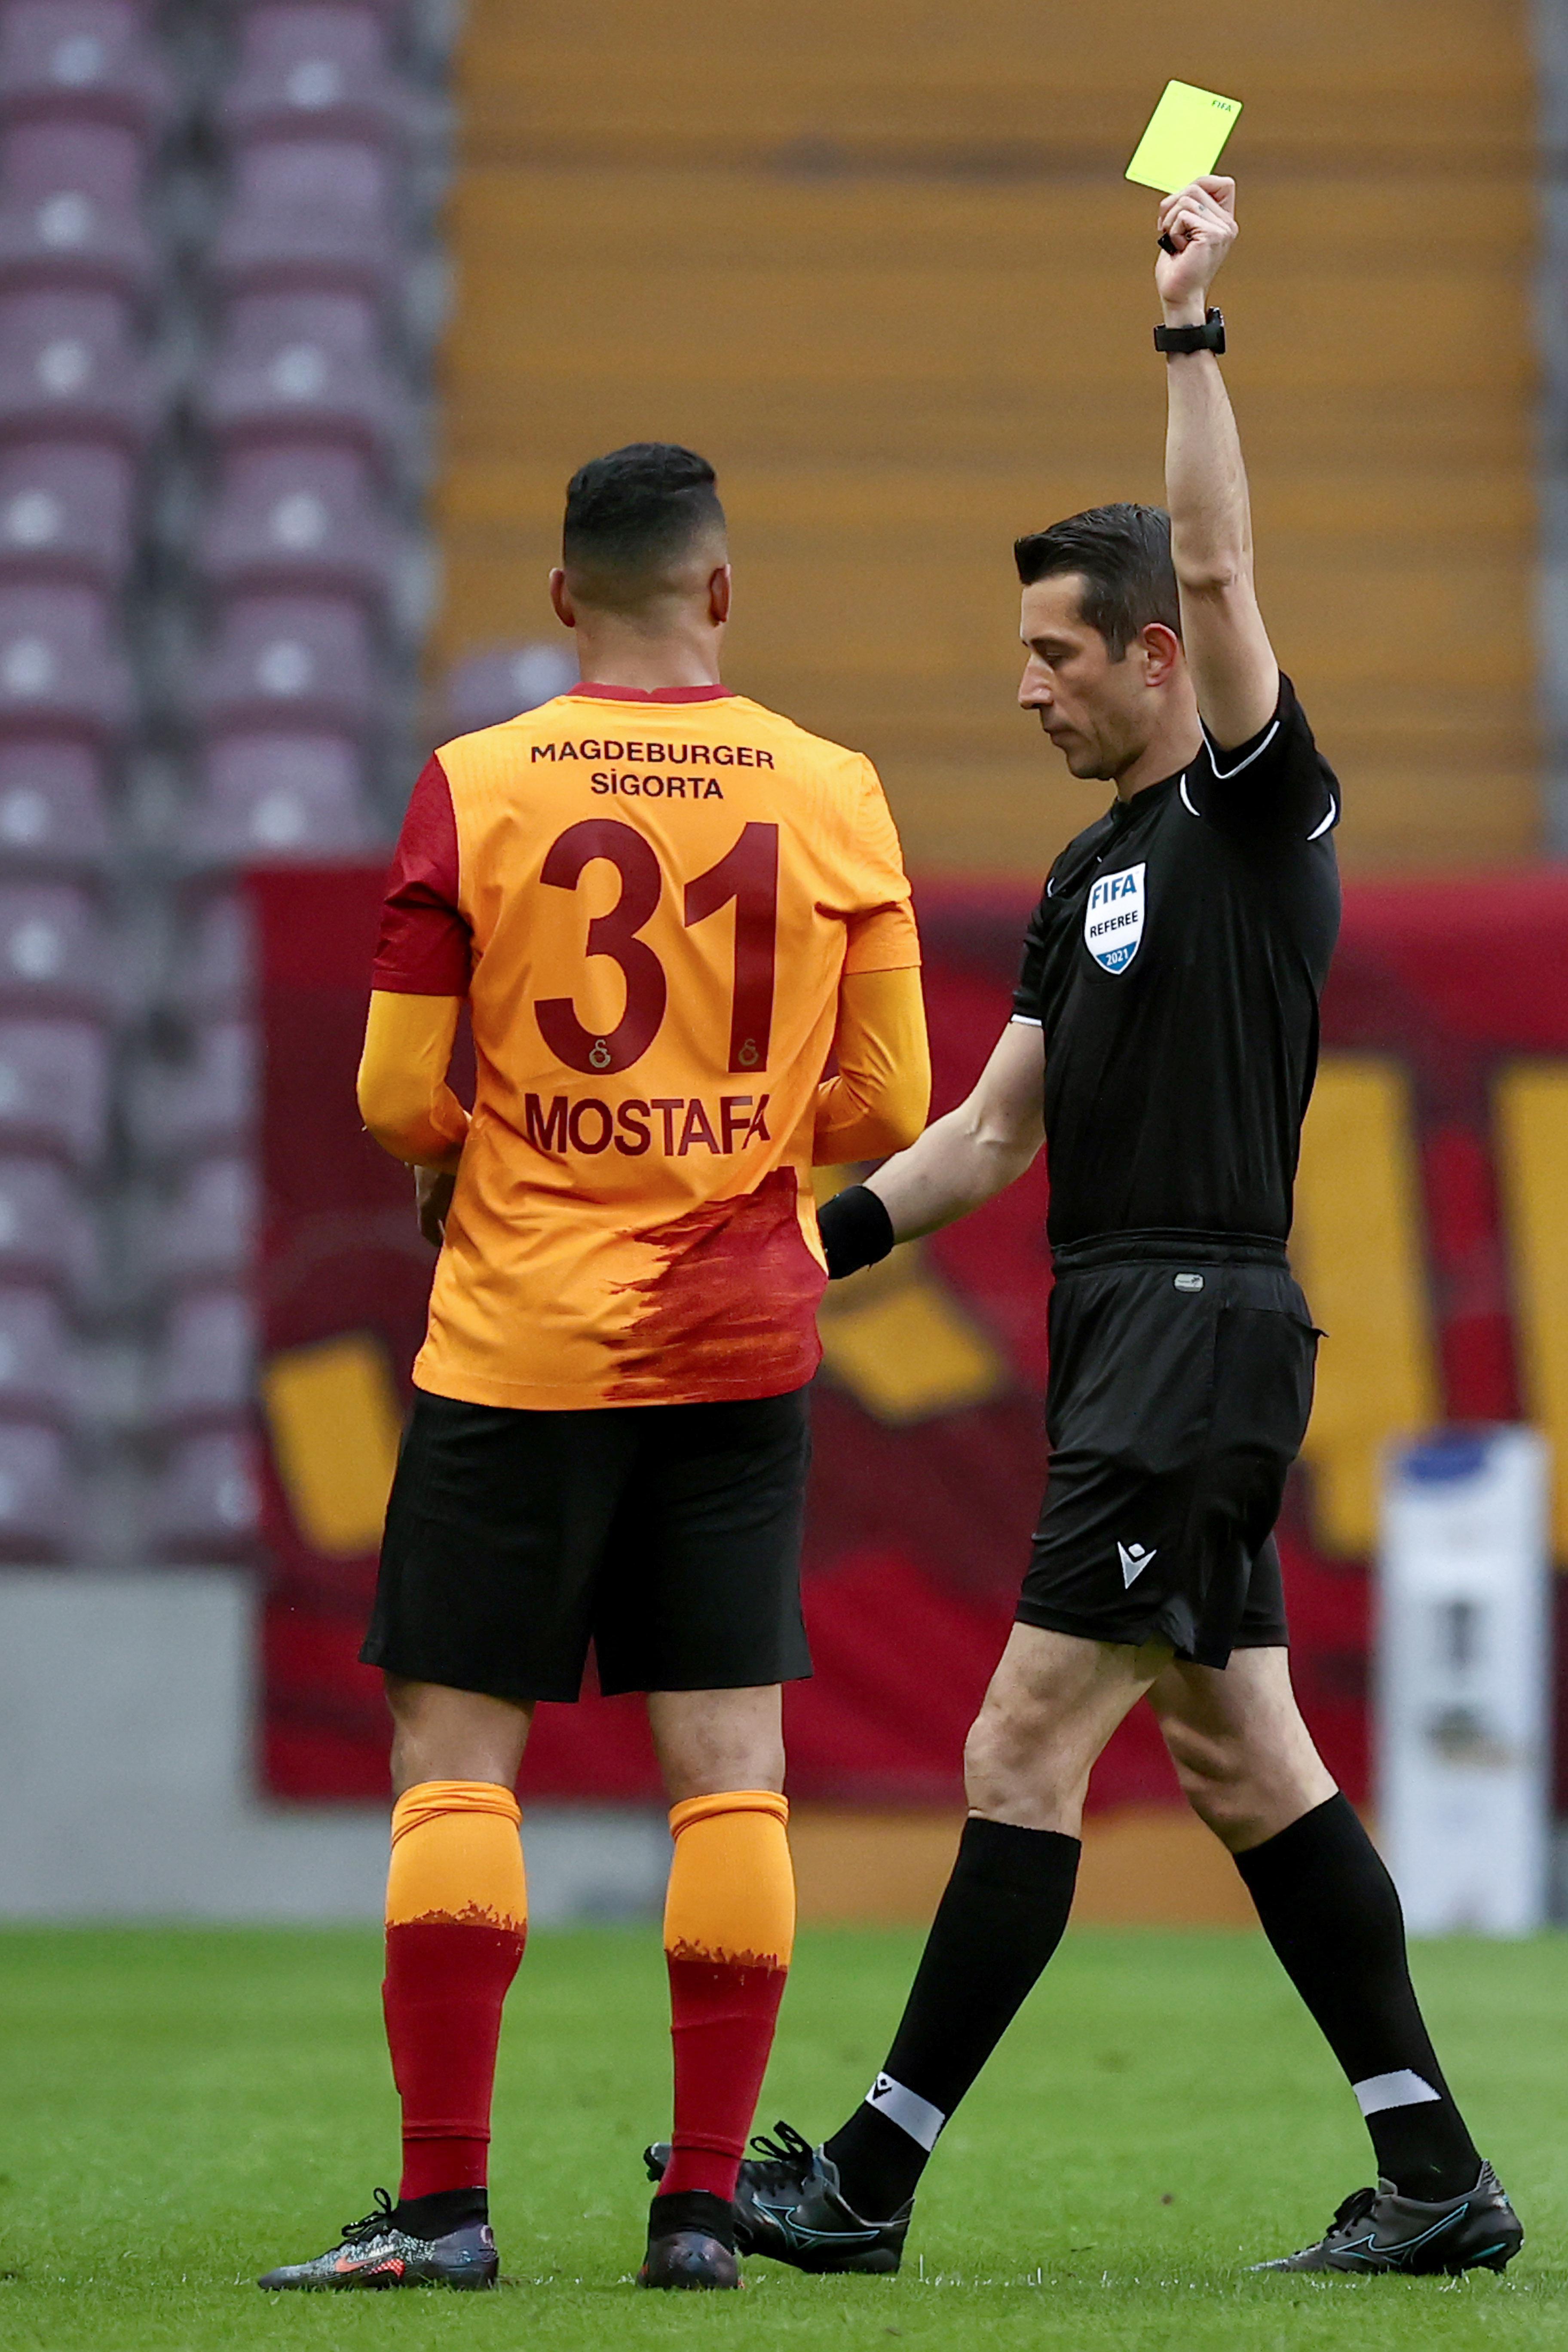 (ÖZET) Galatasaray - Fatih Karagümrük maç sonucu: 1-1